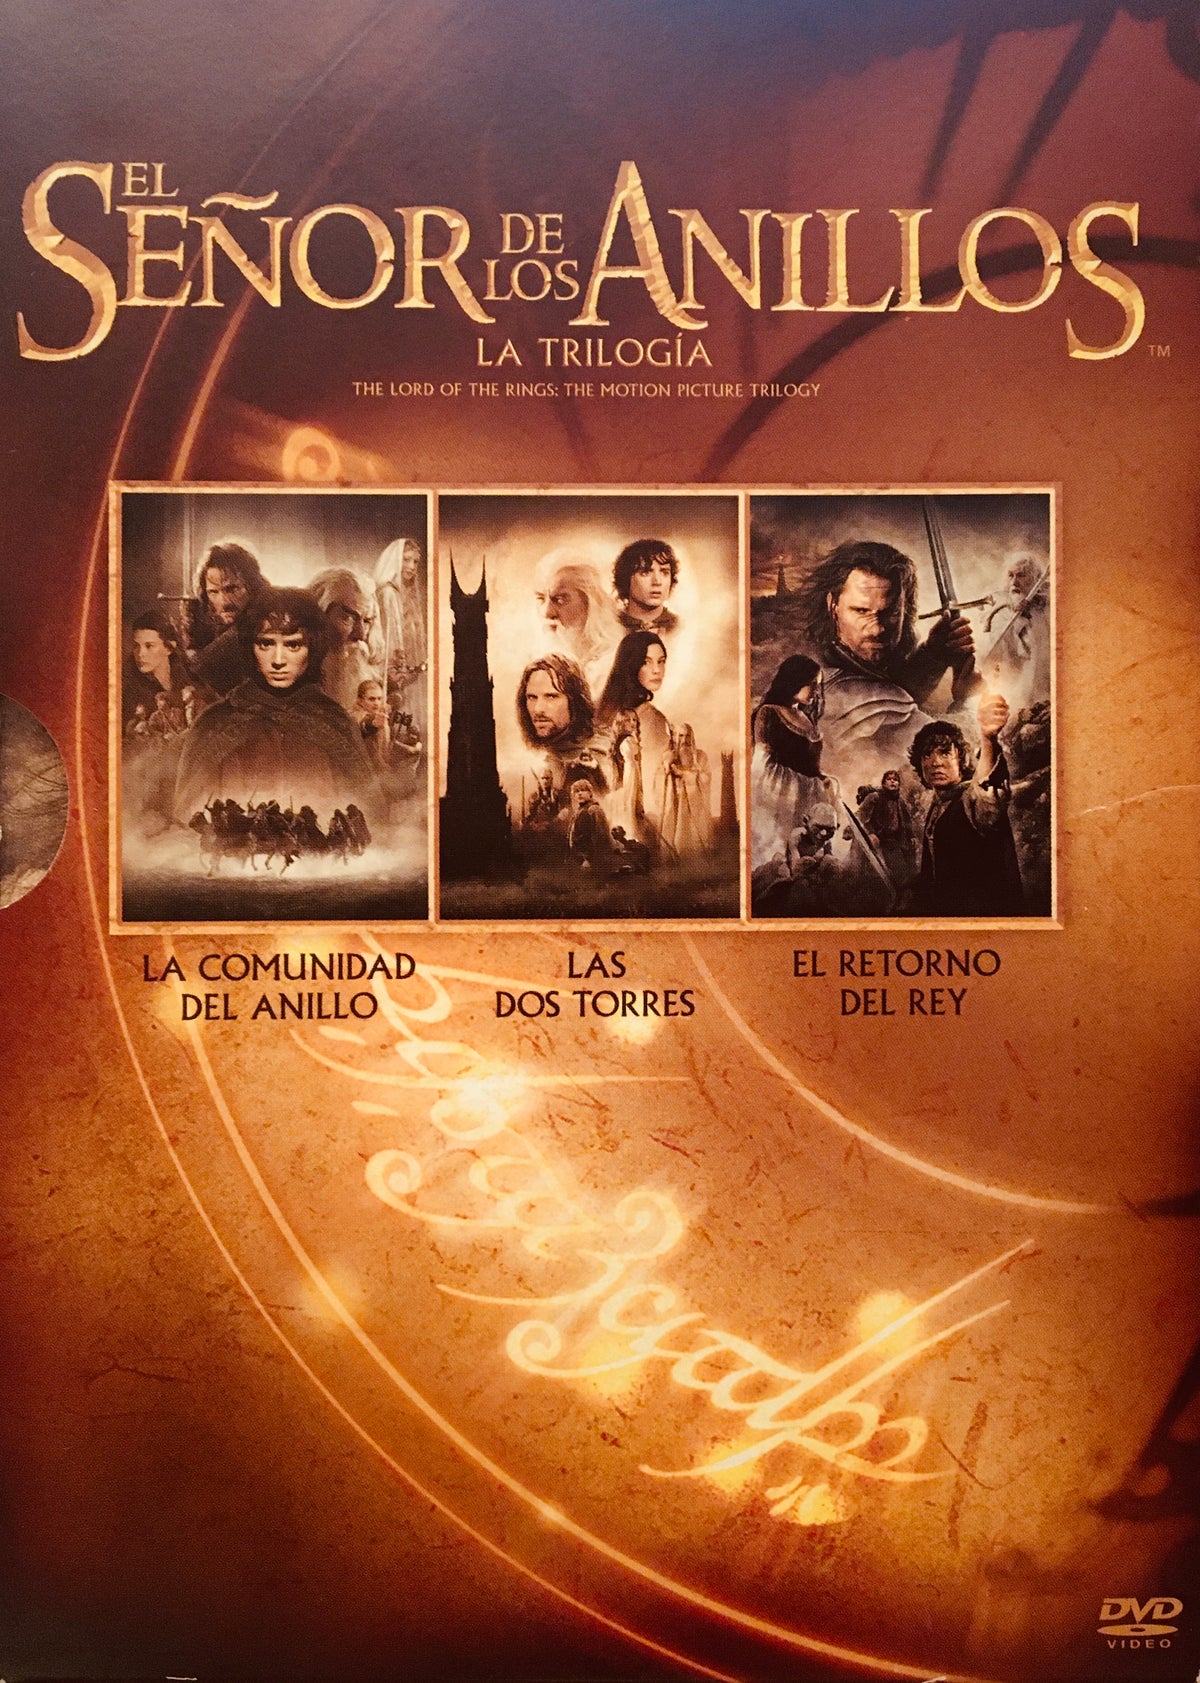 El Señor de los Anillos La Trilogía 6 DVD | Lord of the Rings in Spanish 6 DVD Set